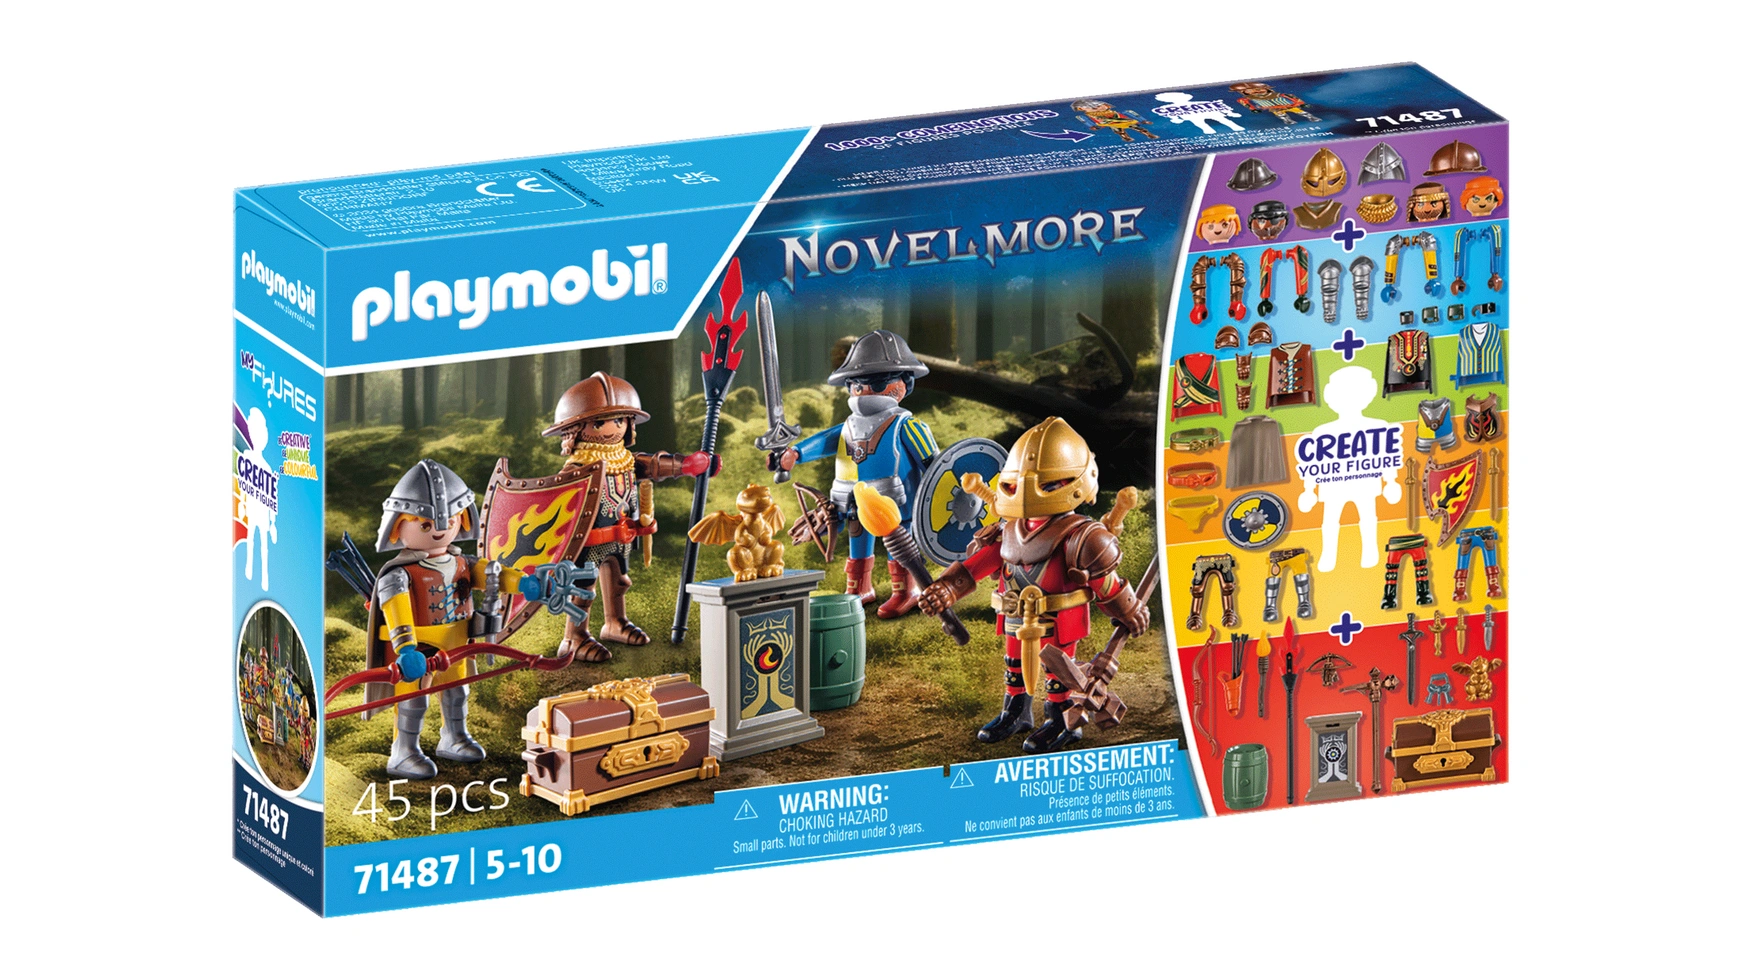 Novelmore мои фигурки: рыцари новелмора Playmobil конструктор playmobil отдельные фигурки 001052 ковбой золотоискатель